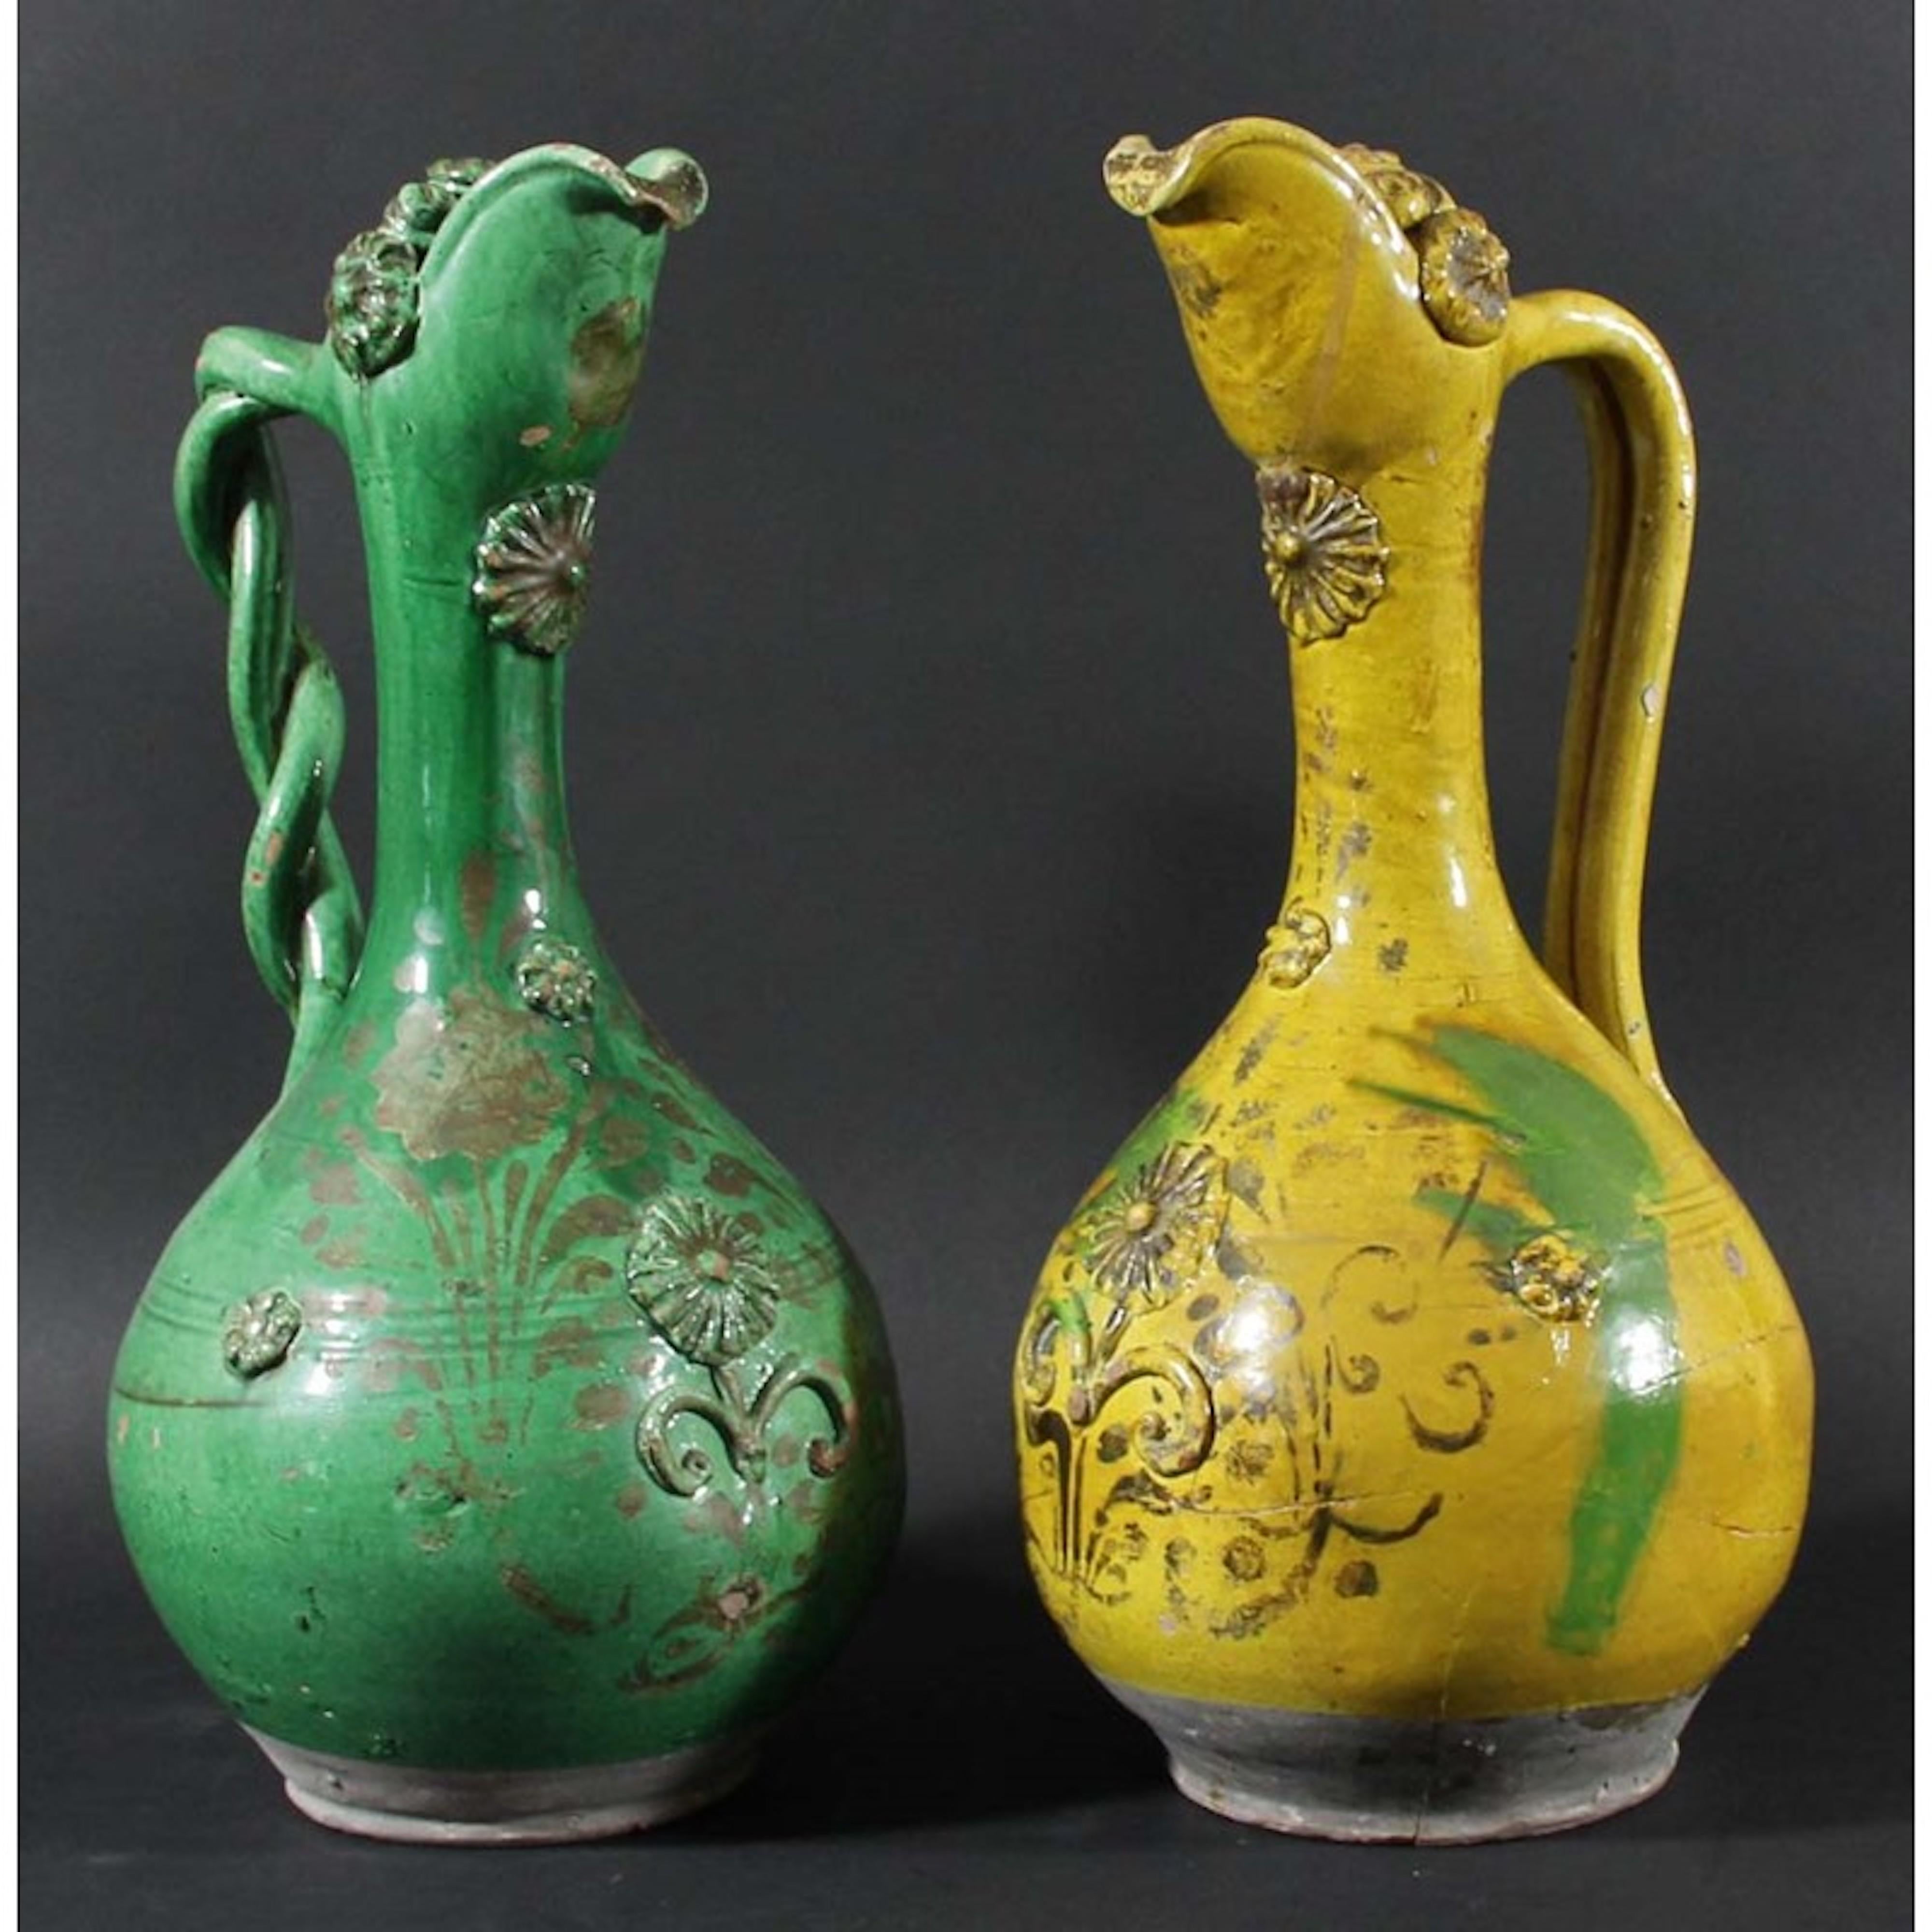 Feines Paar Terrakotta-Kännchen aus dem 19. Jahrhundert, osmanische Wiedergeburt, grün und ockerfarben, vergoldet und profiliert

- Charakteristisch für den einzigartigen osmanischen Wiedergeburtsstil von Canakkale in Form, Komposition und